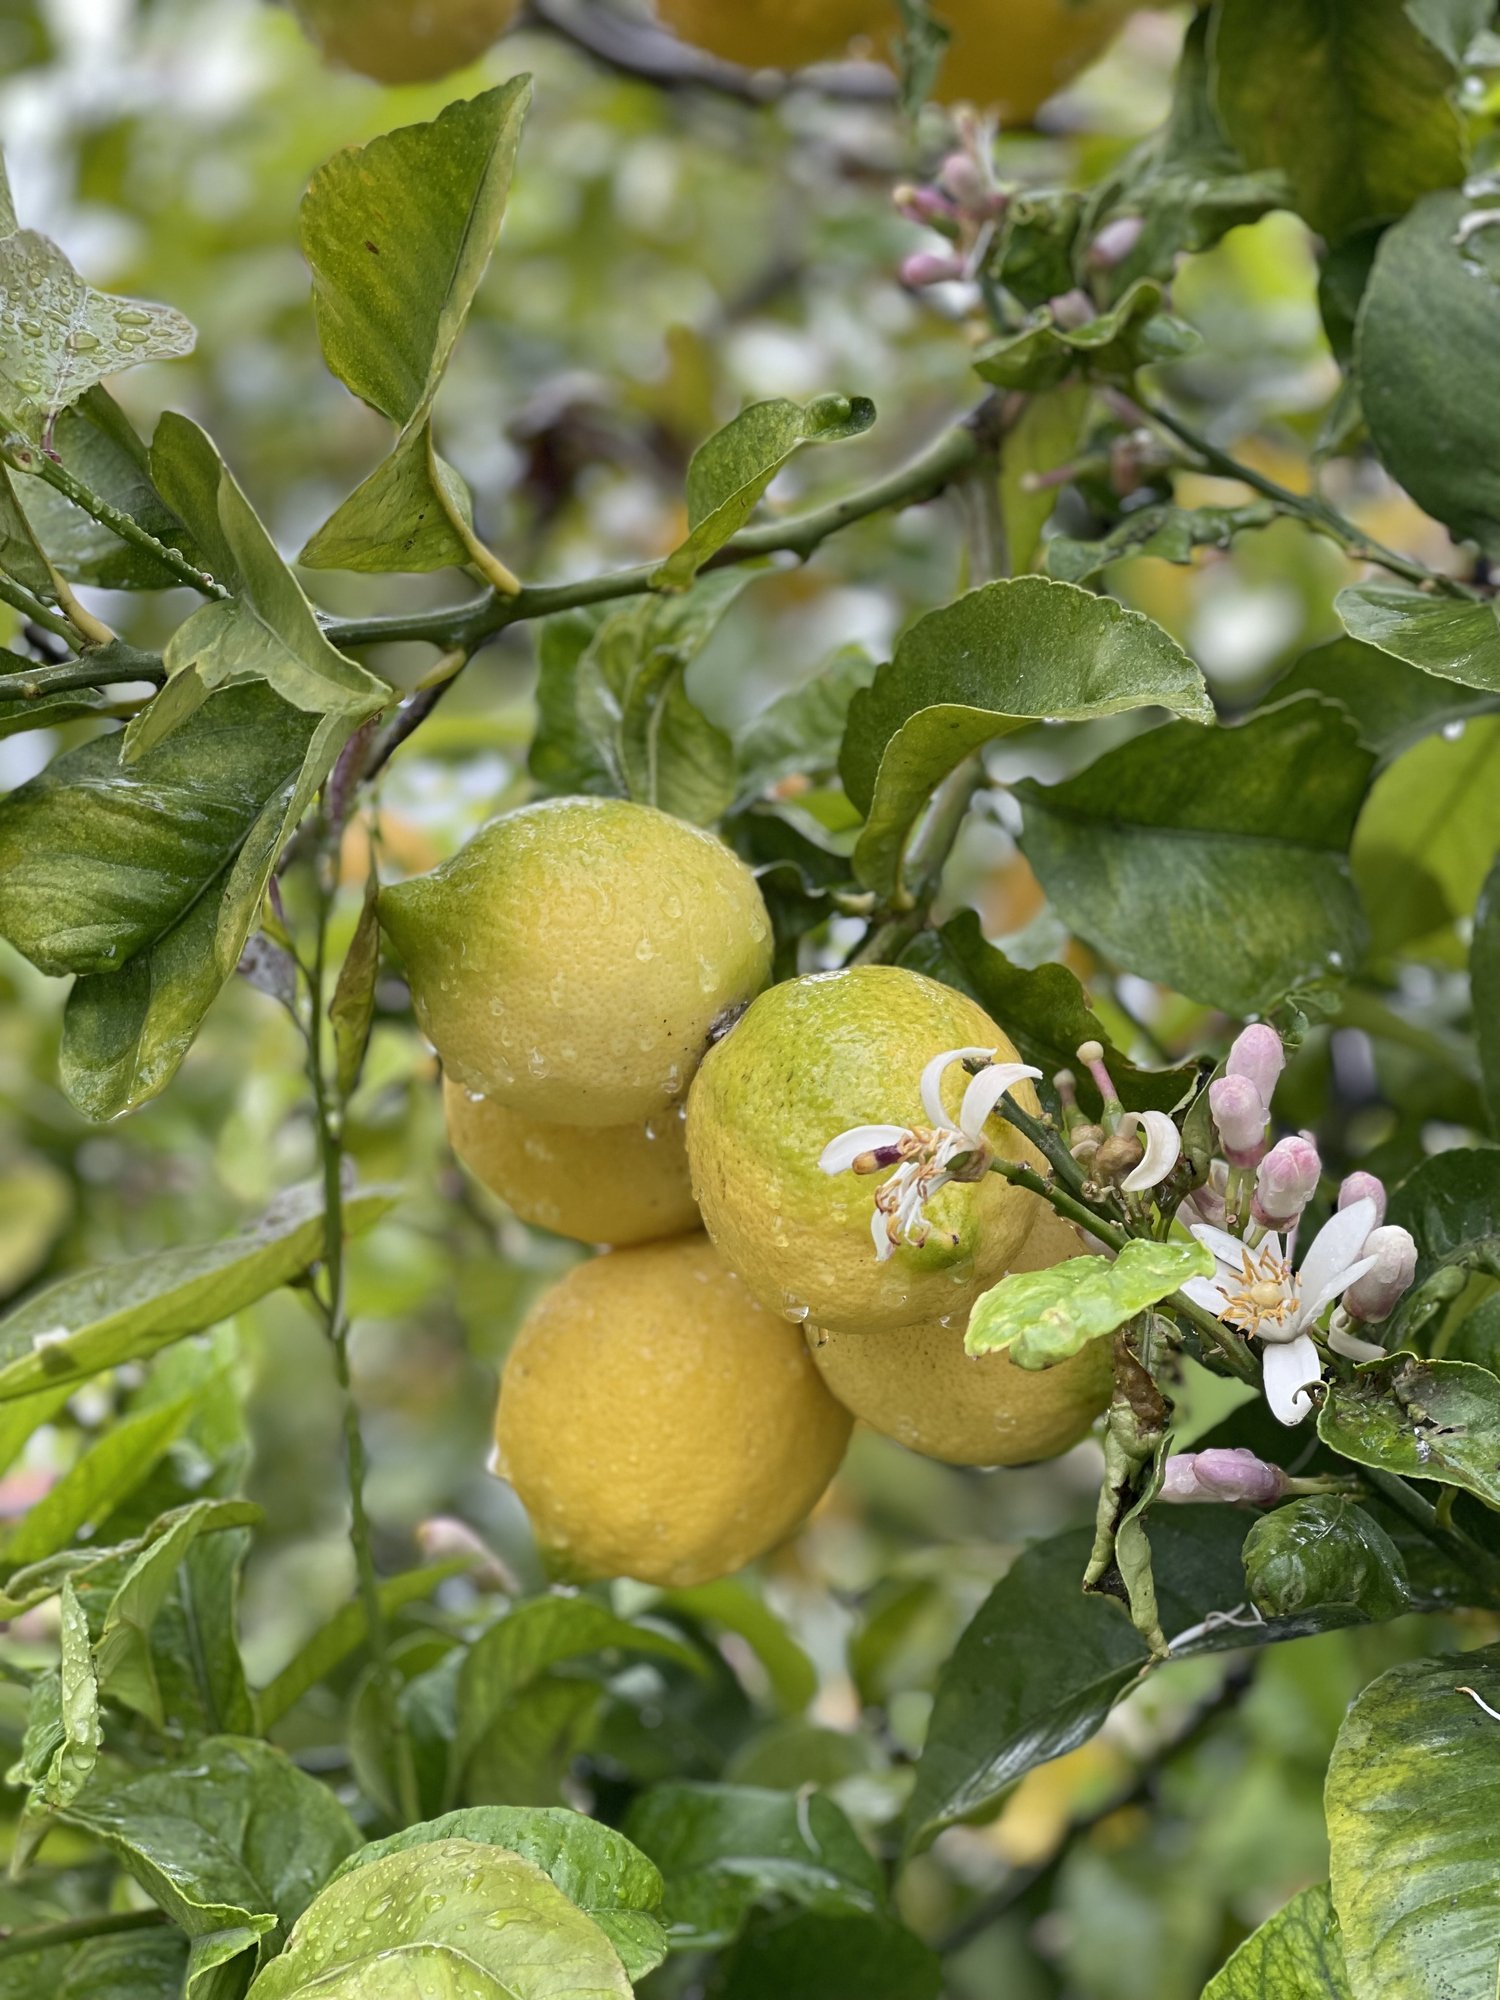 Снимката на лимоново дърво с плод е илюстративна